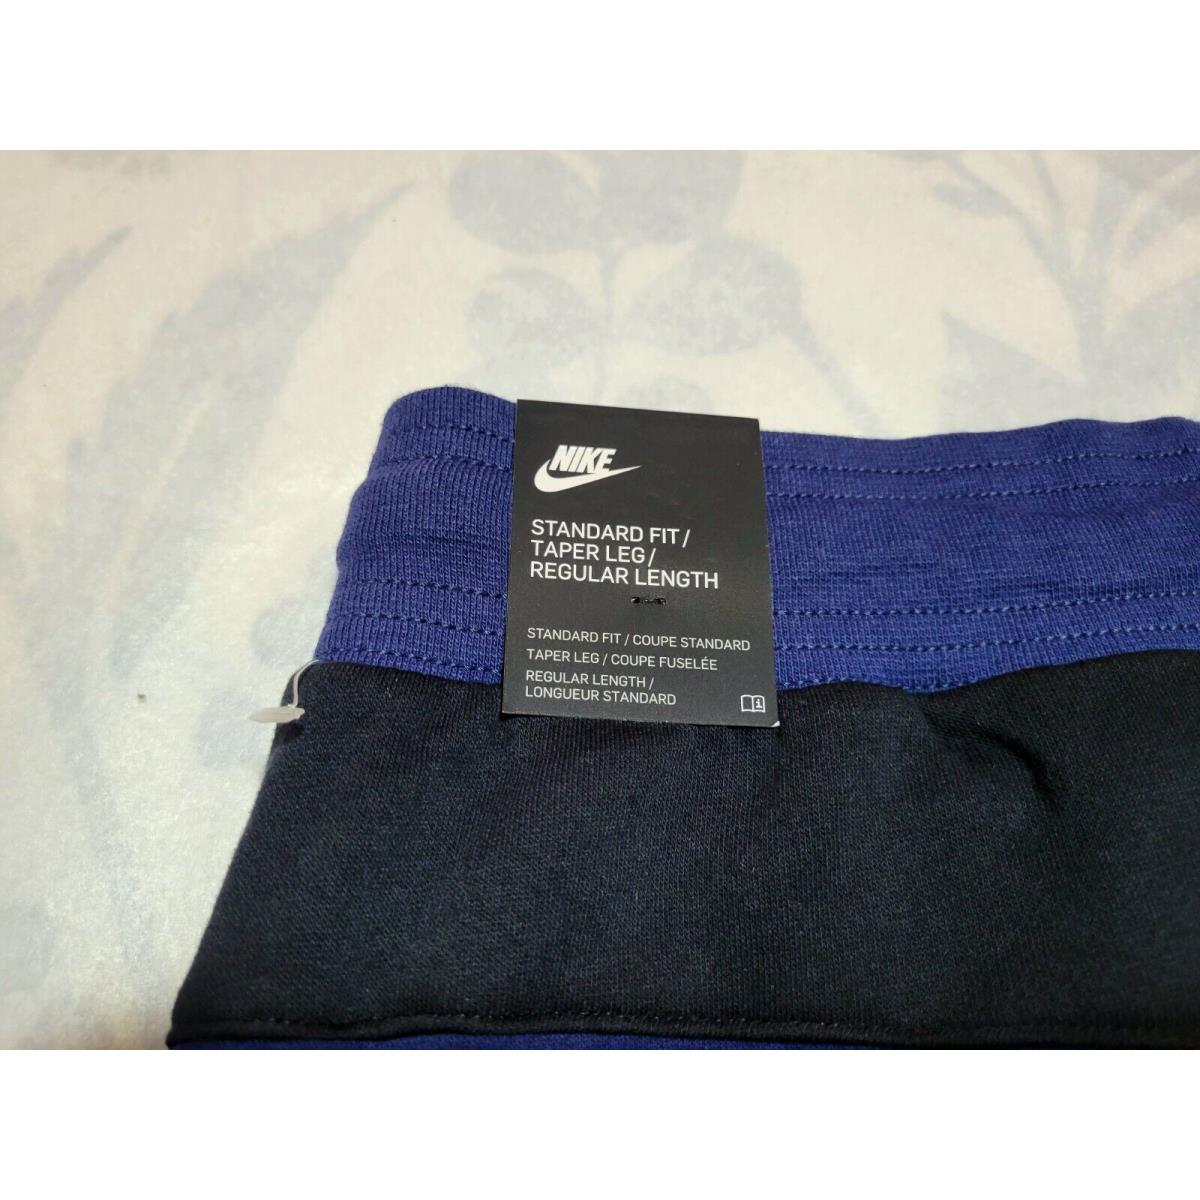 Nike clothing  - Blue Black 7